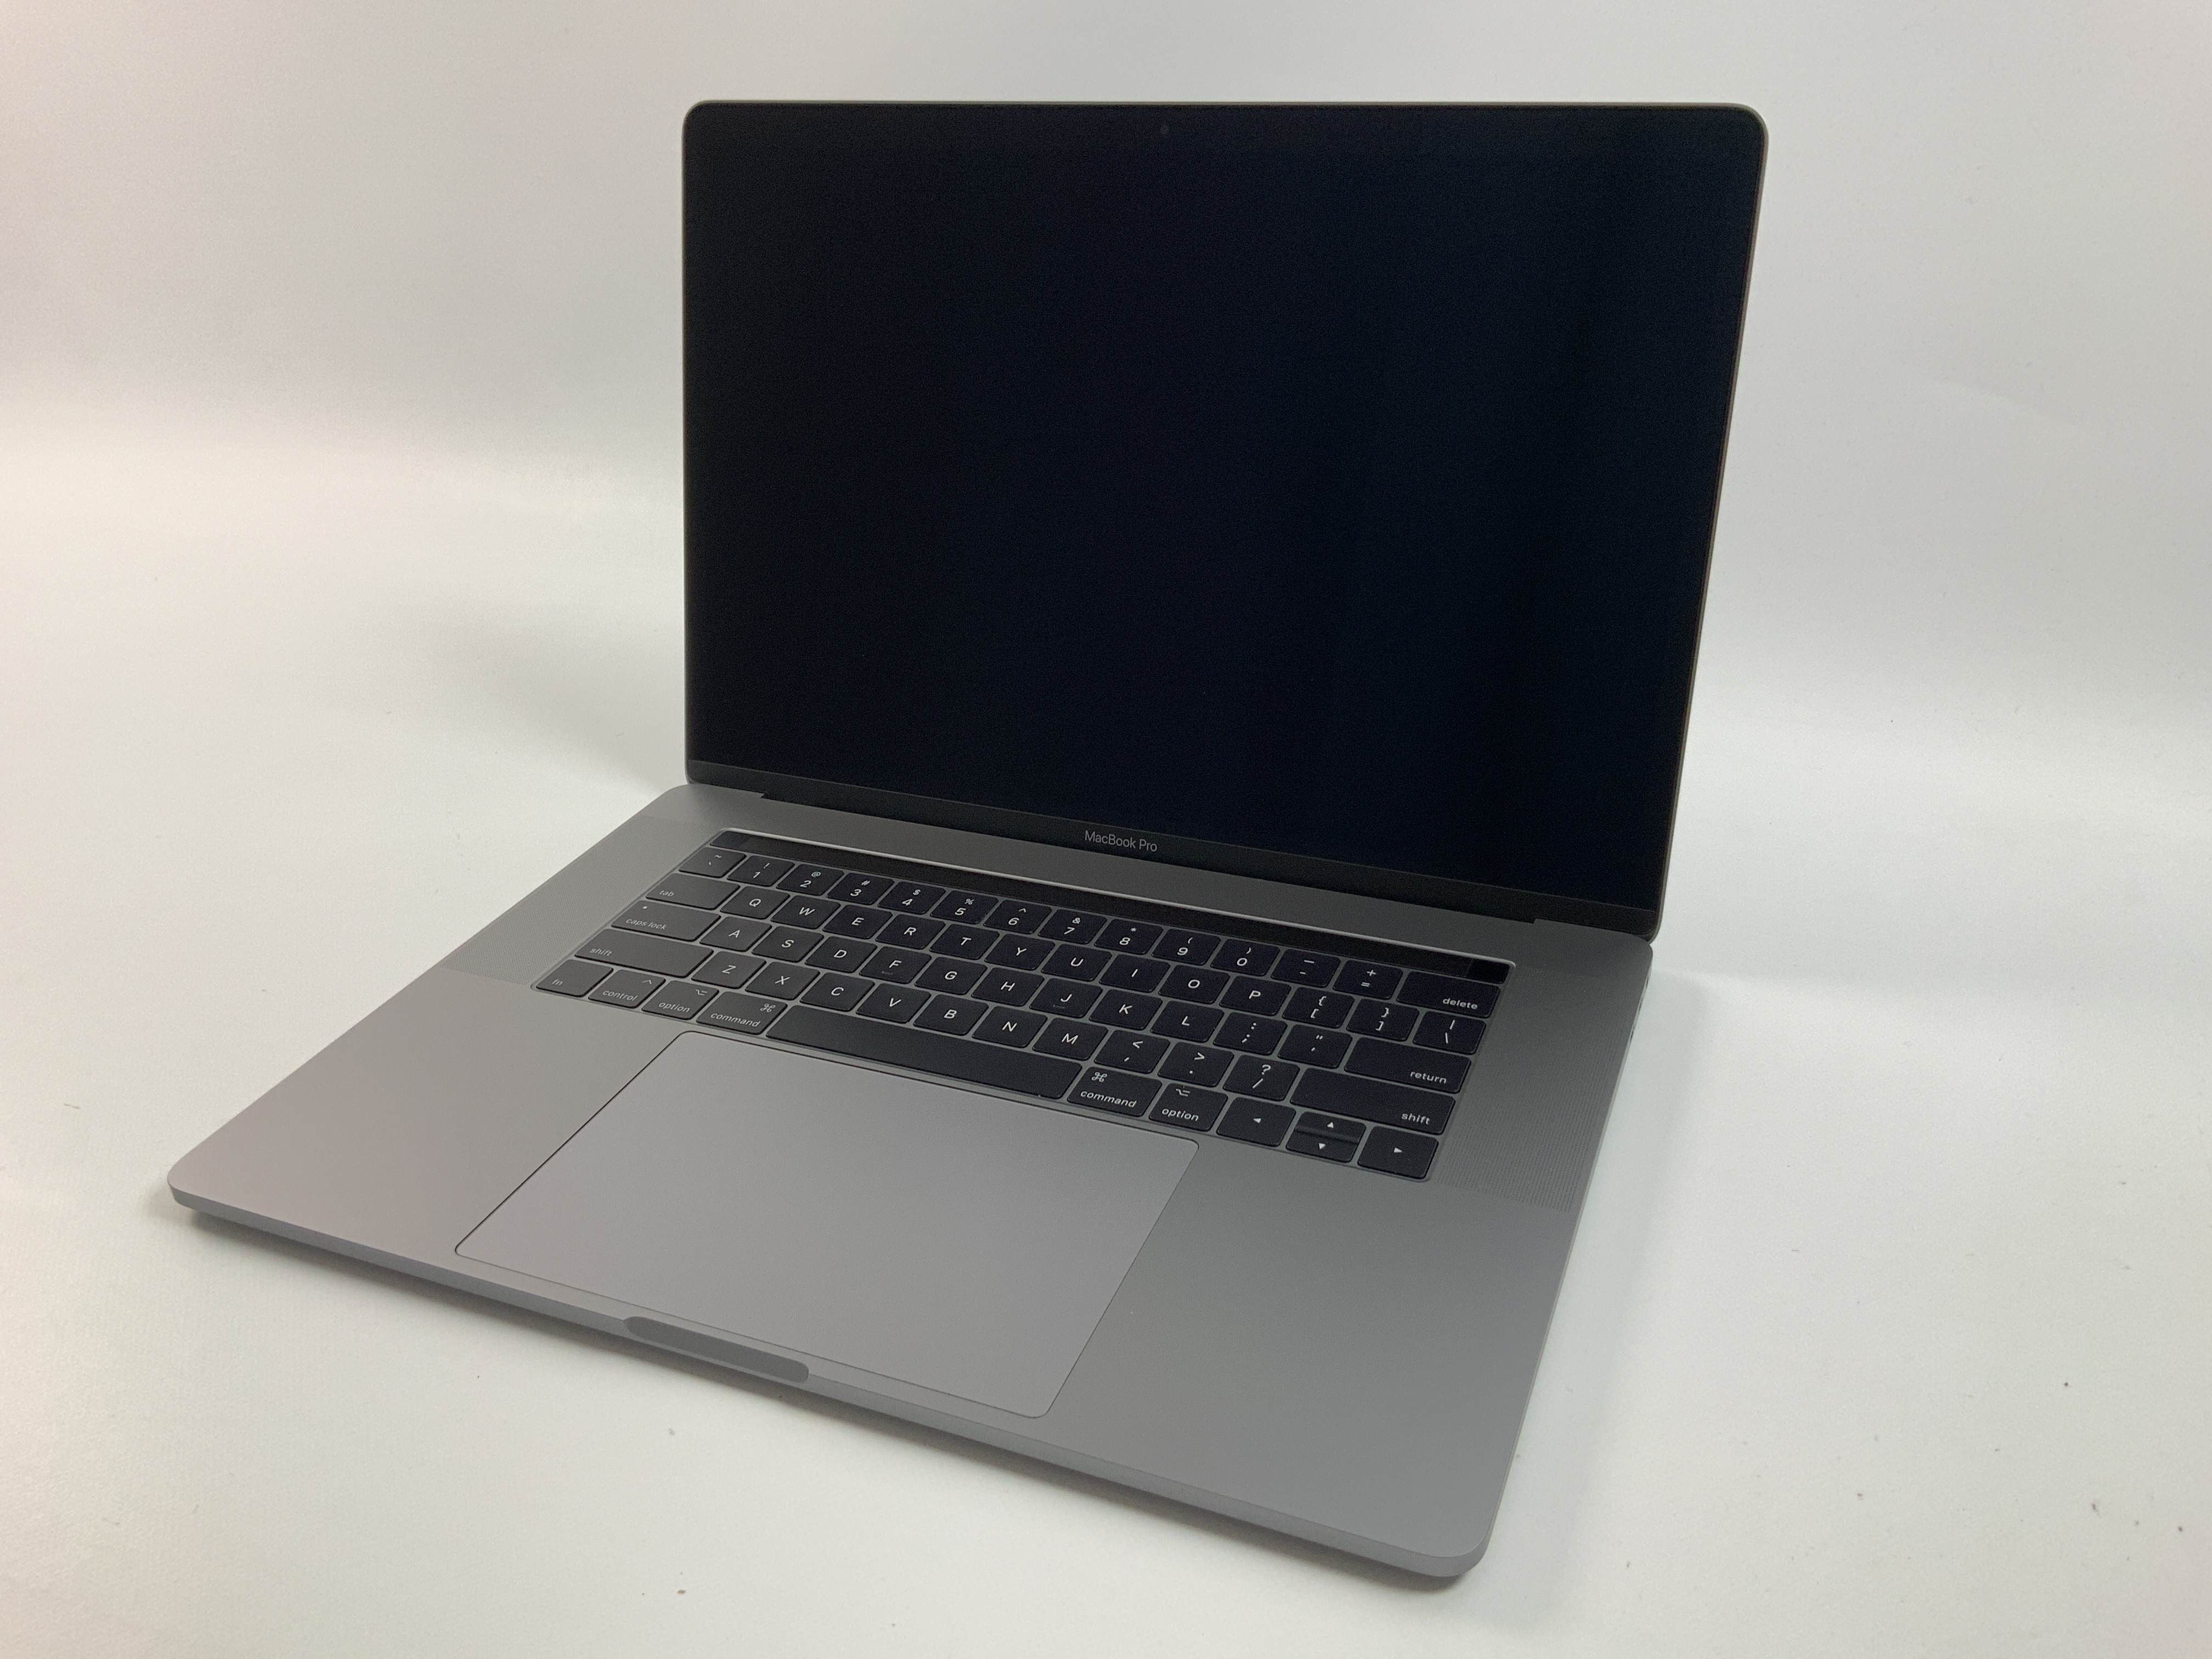 MacBook Pro 15" Touch Bar Mid 2017 (Intel Quad-Core i7 2.8 GHz 16 GB RAM 512 GB SSD), Space Gray, Intel Quad-Core i7 2.8 GHz, 16 GB RAM, 512 GB SSD, obraz 1